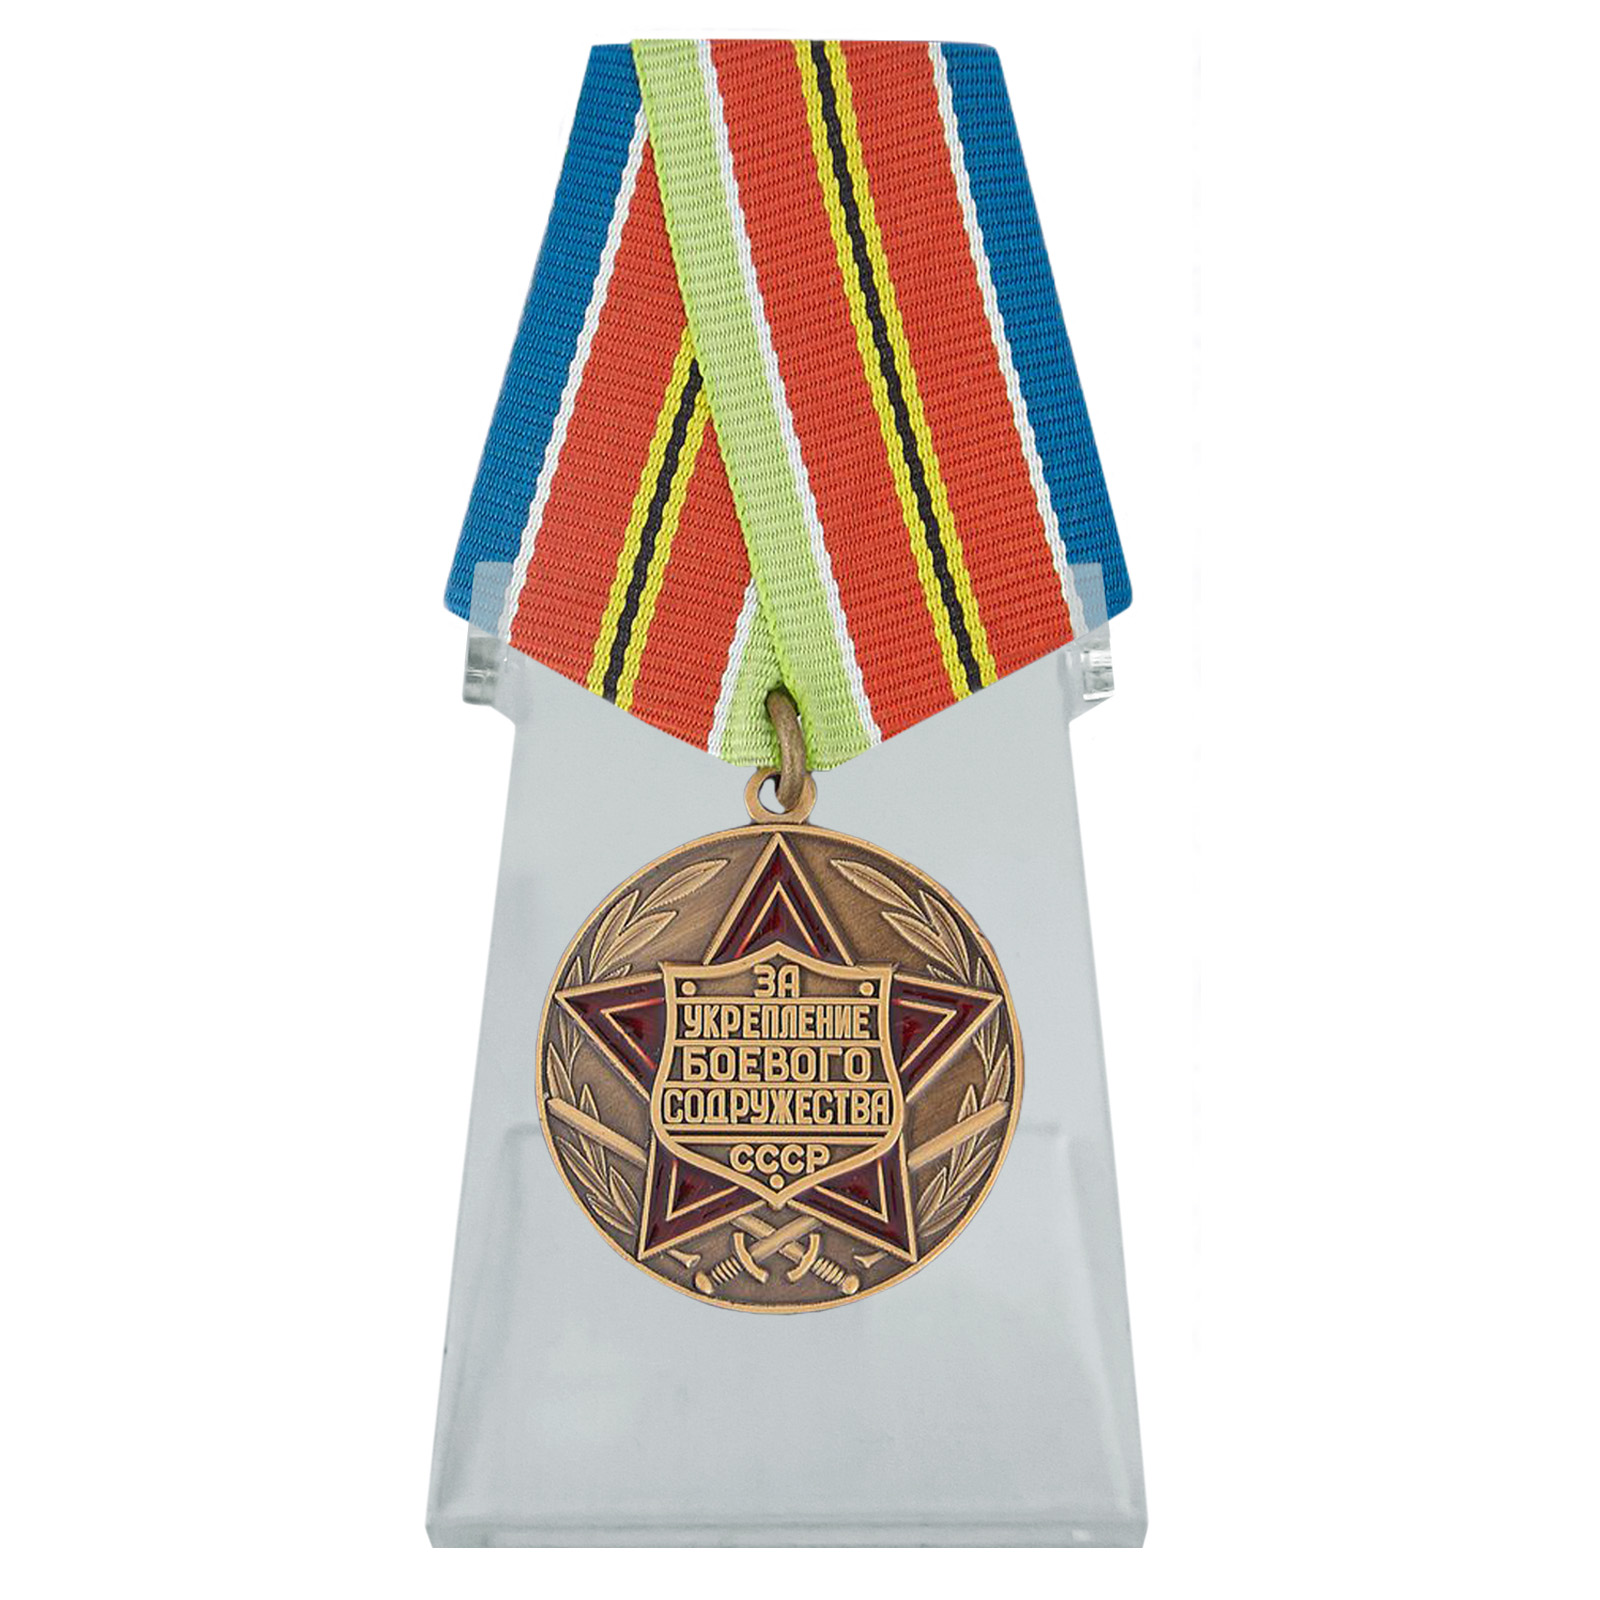 Медаль "За укрепление боевого содружества" на подставке